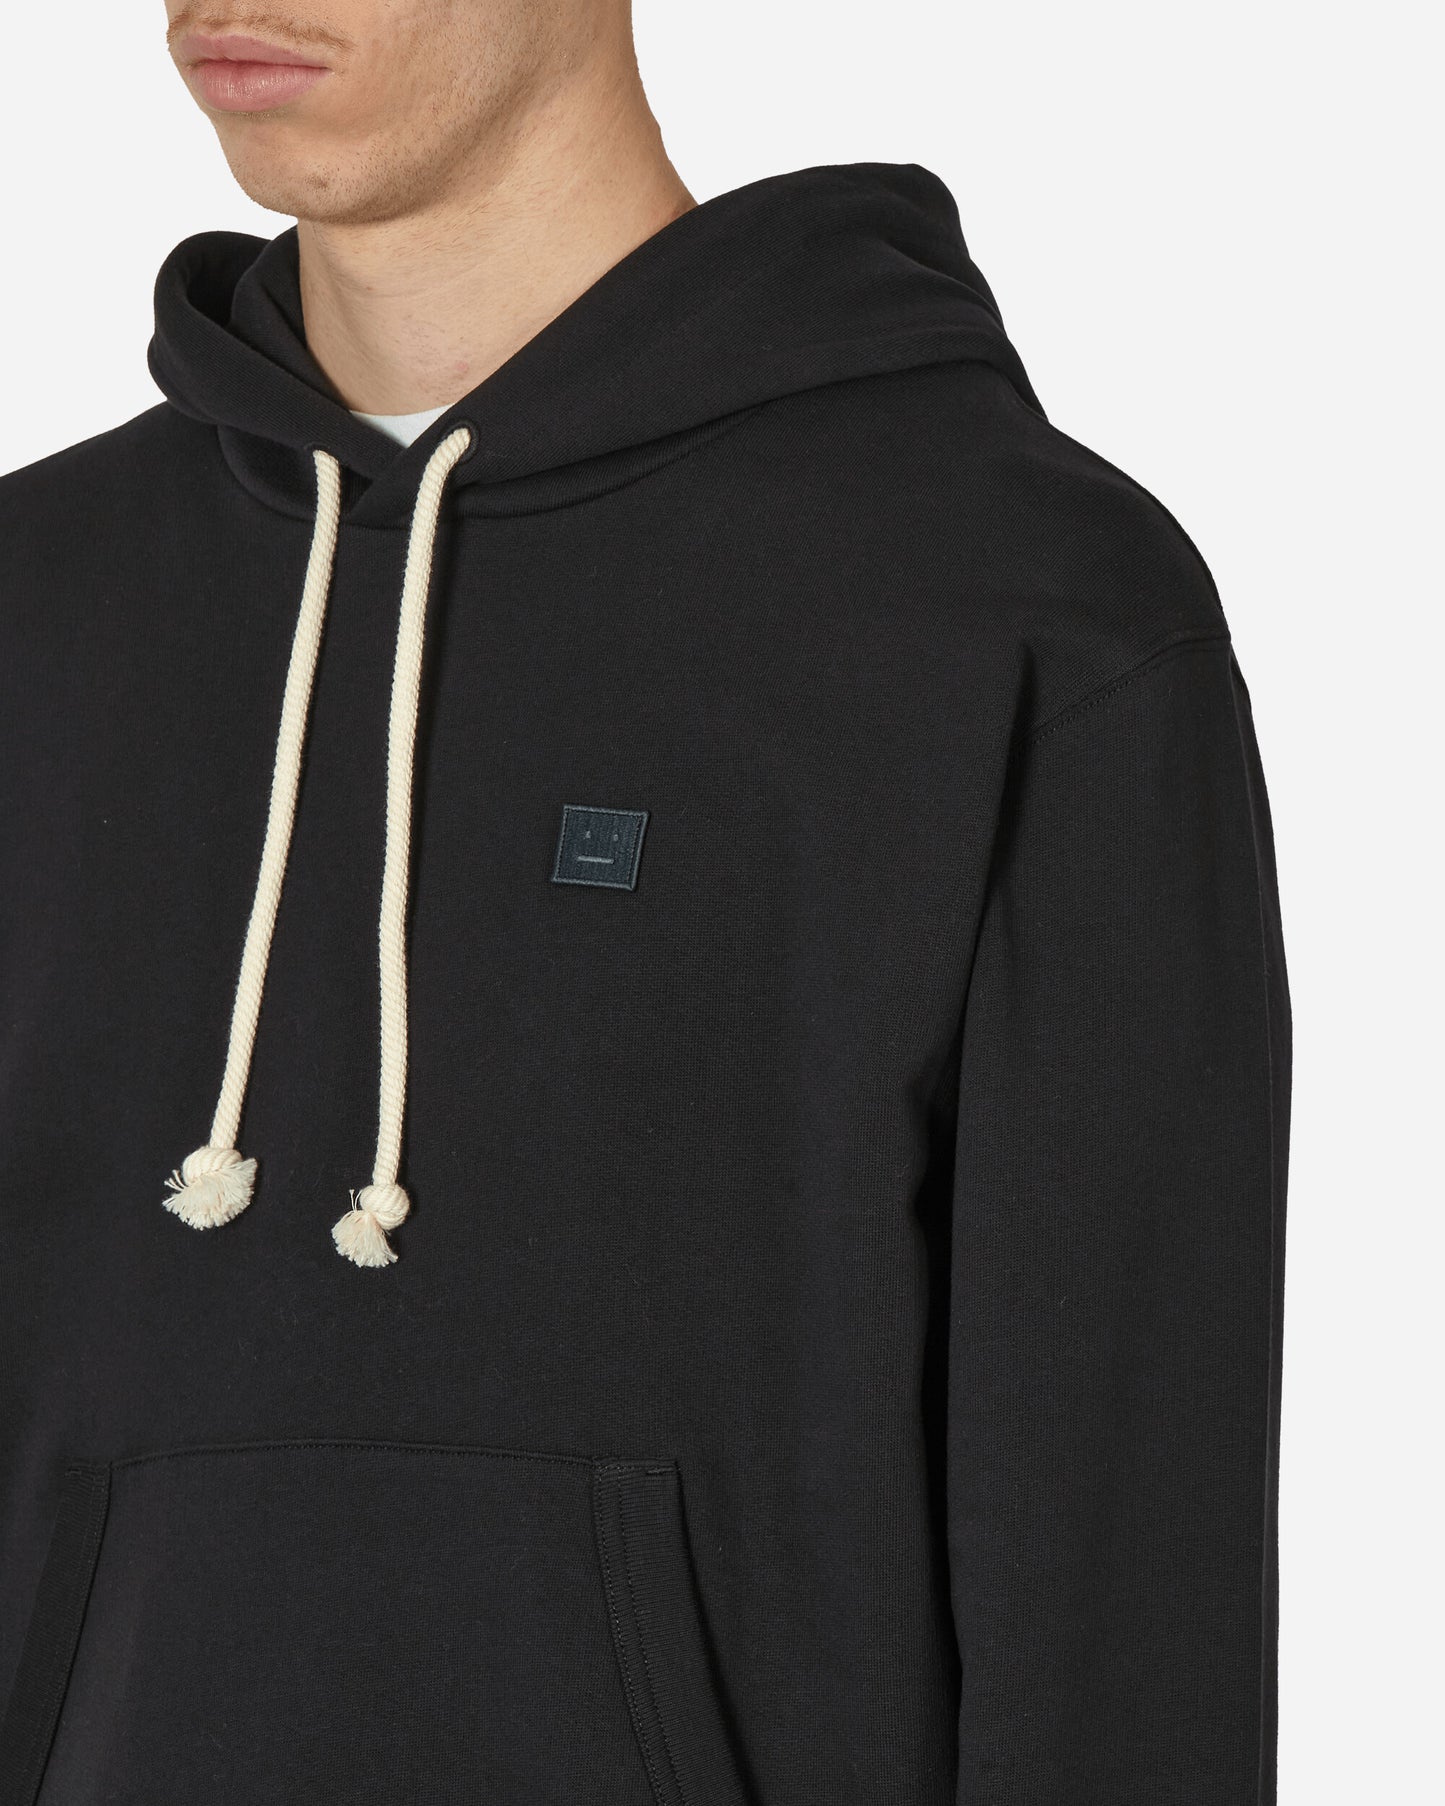 Acne Studios Hooded Black Sweatshirts Hoodies CI0141- 900